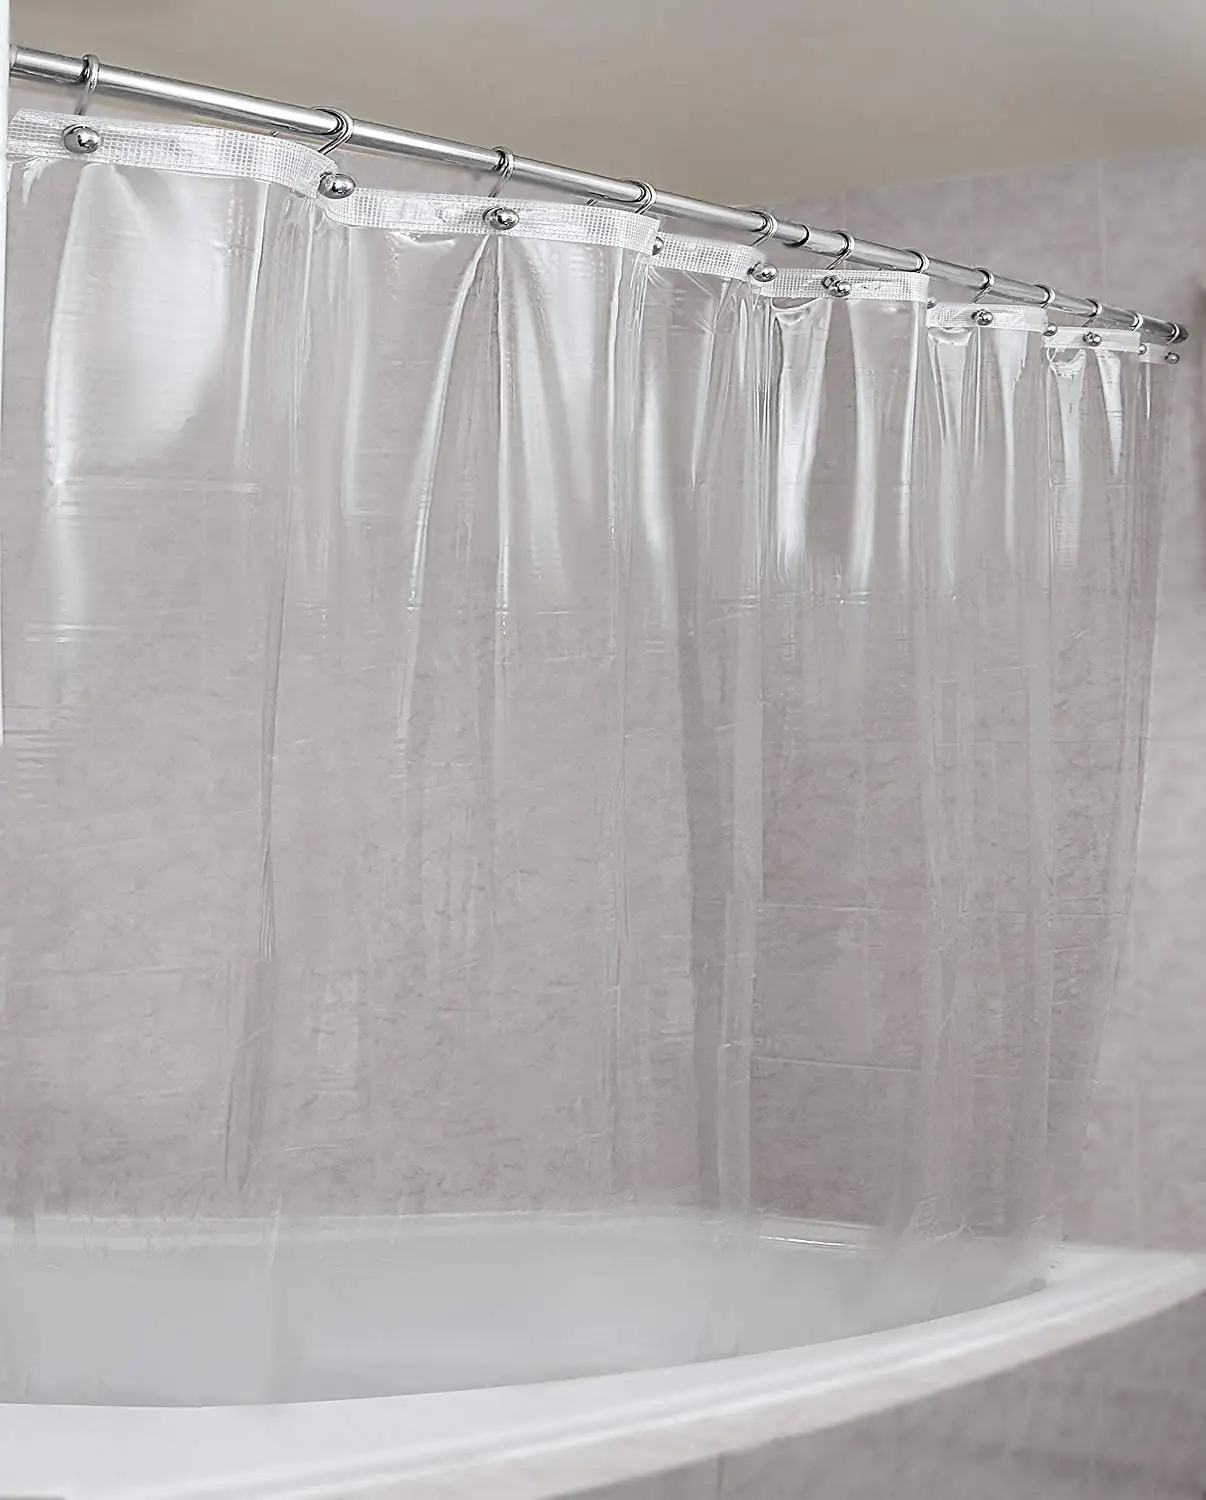 Bathtub Curtains PVC Partition Shower Curtain Thicken Bath Curtain